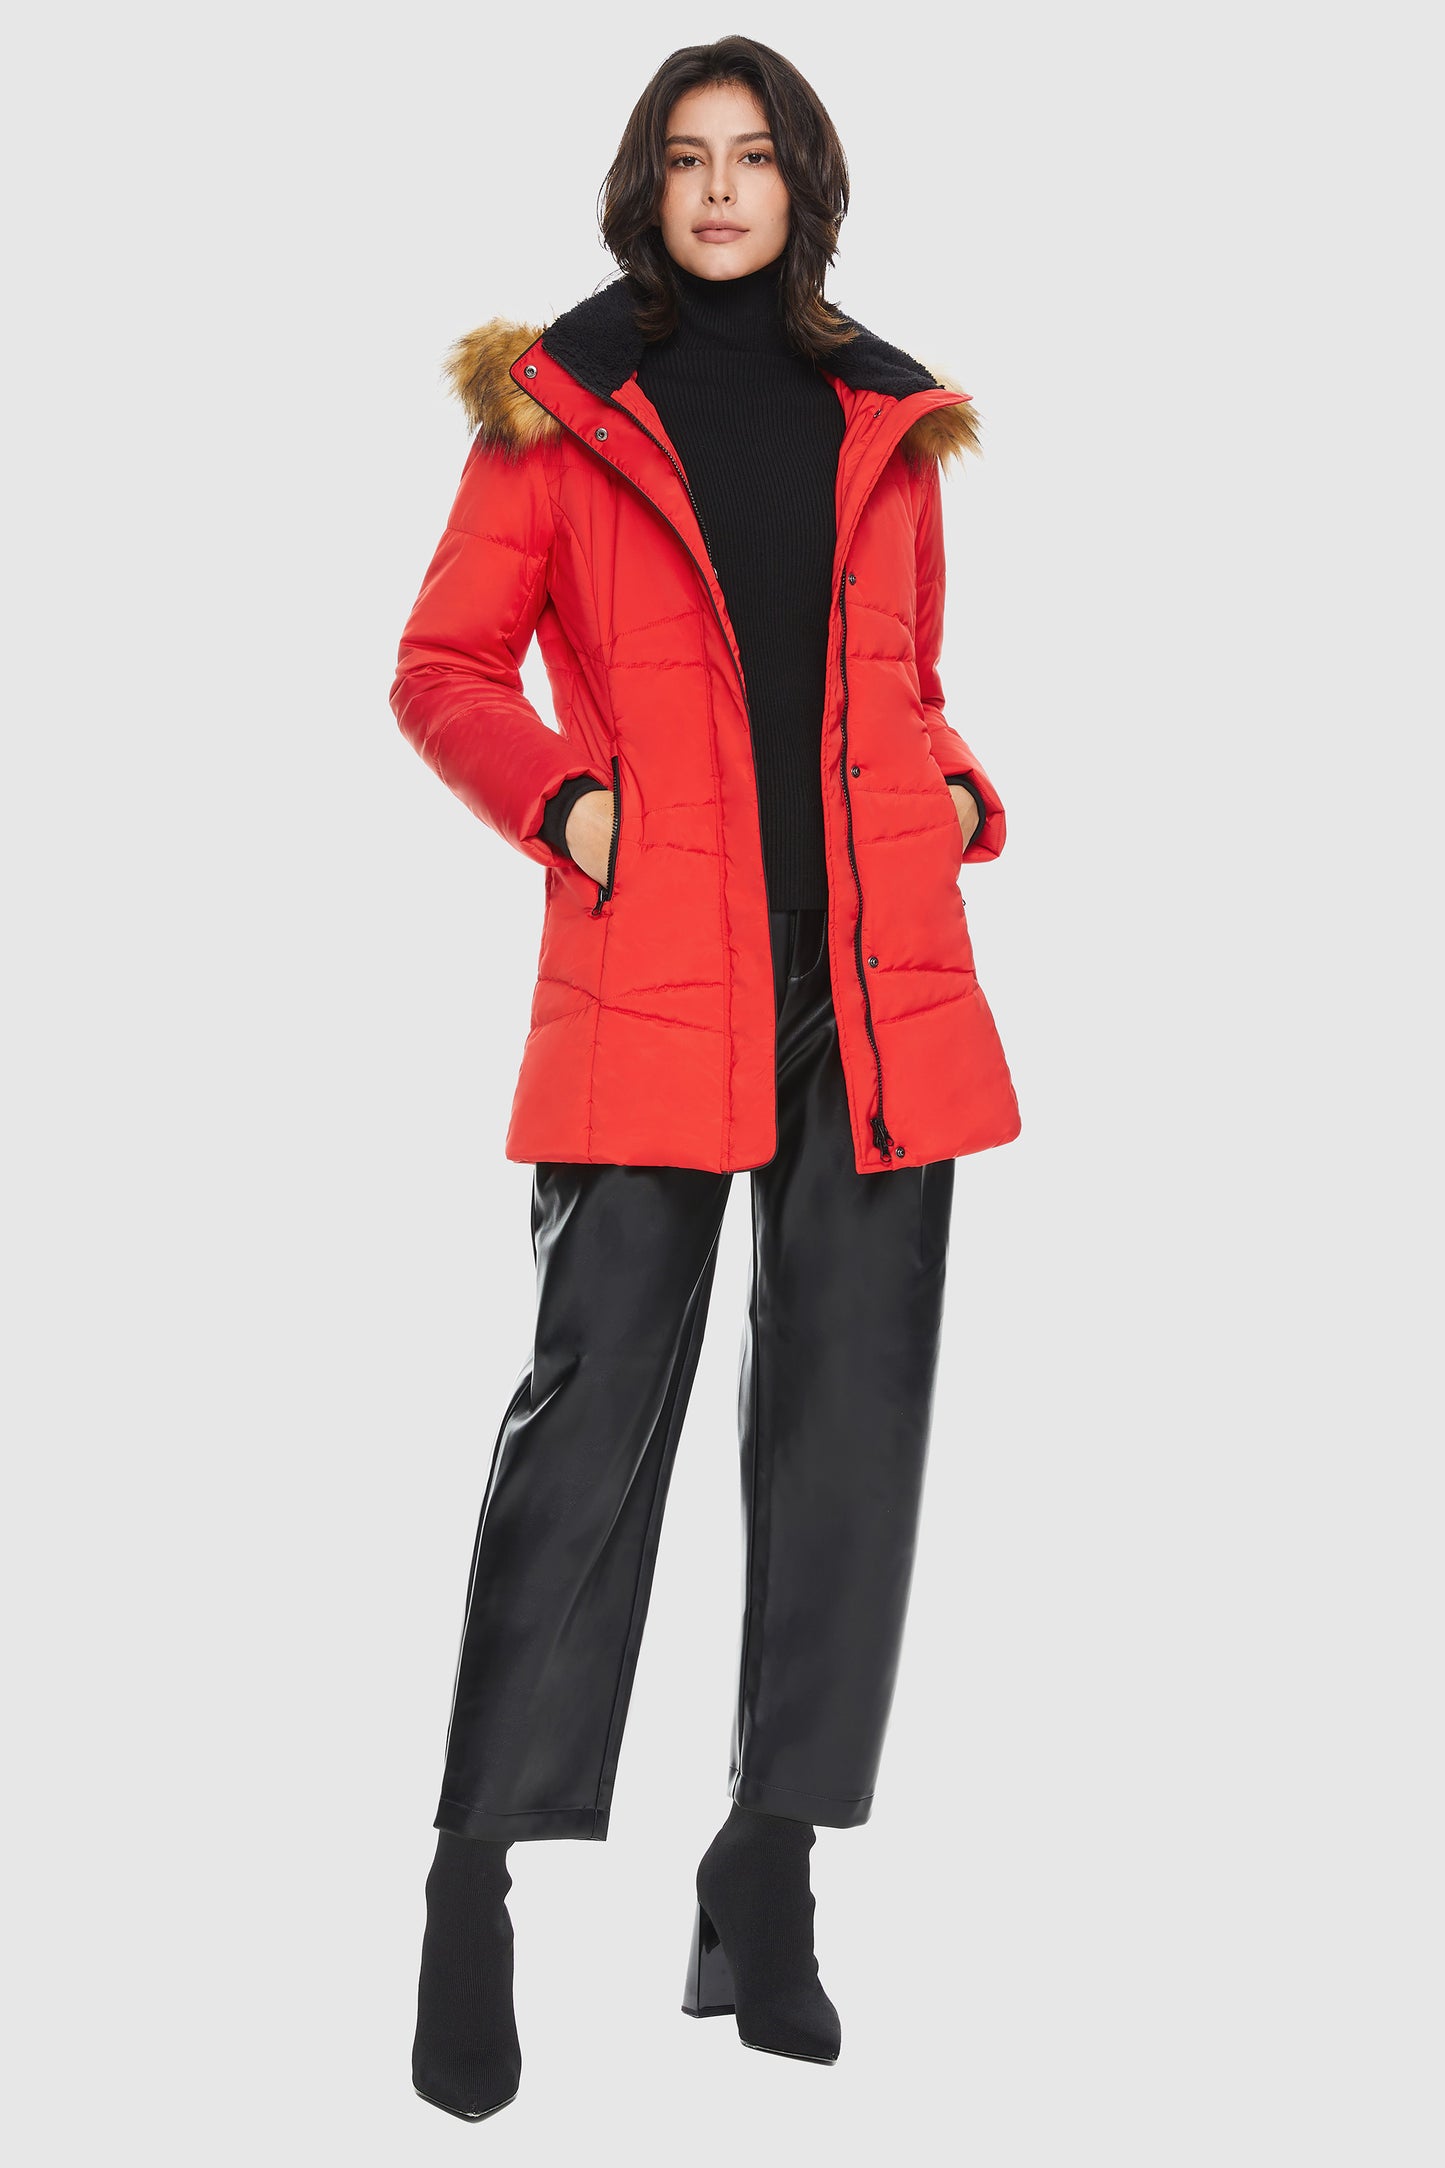 Insulated Jacket Zip-up Winter Coat